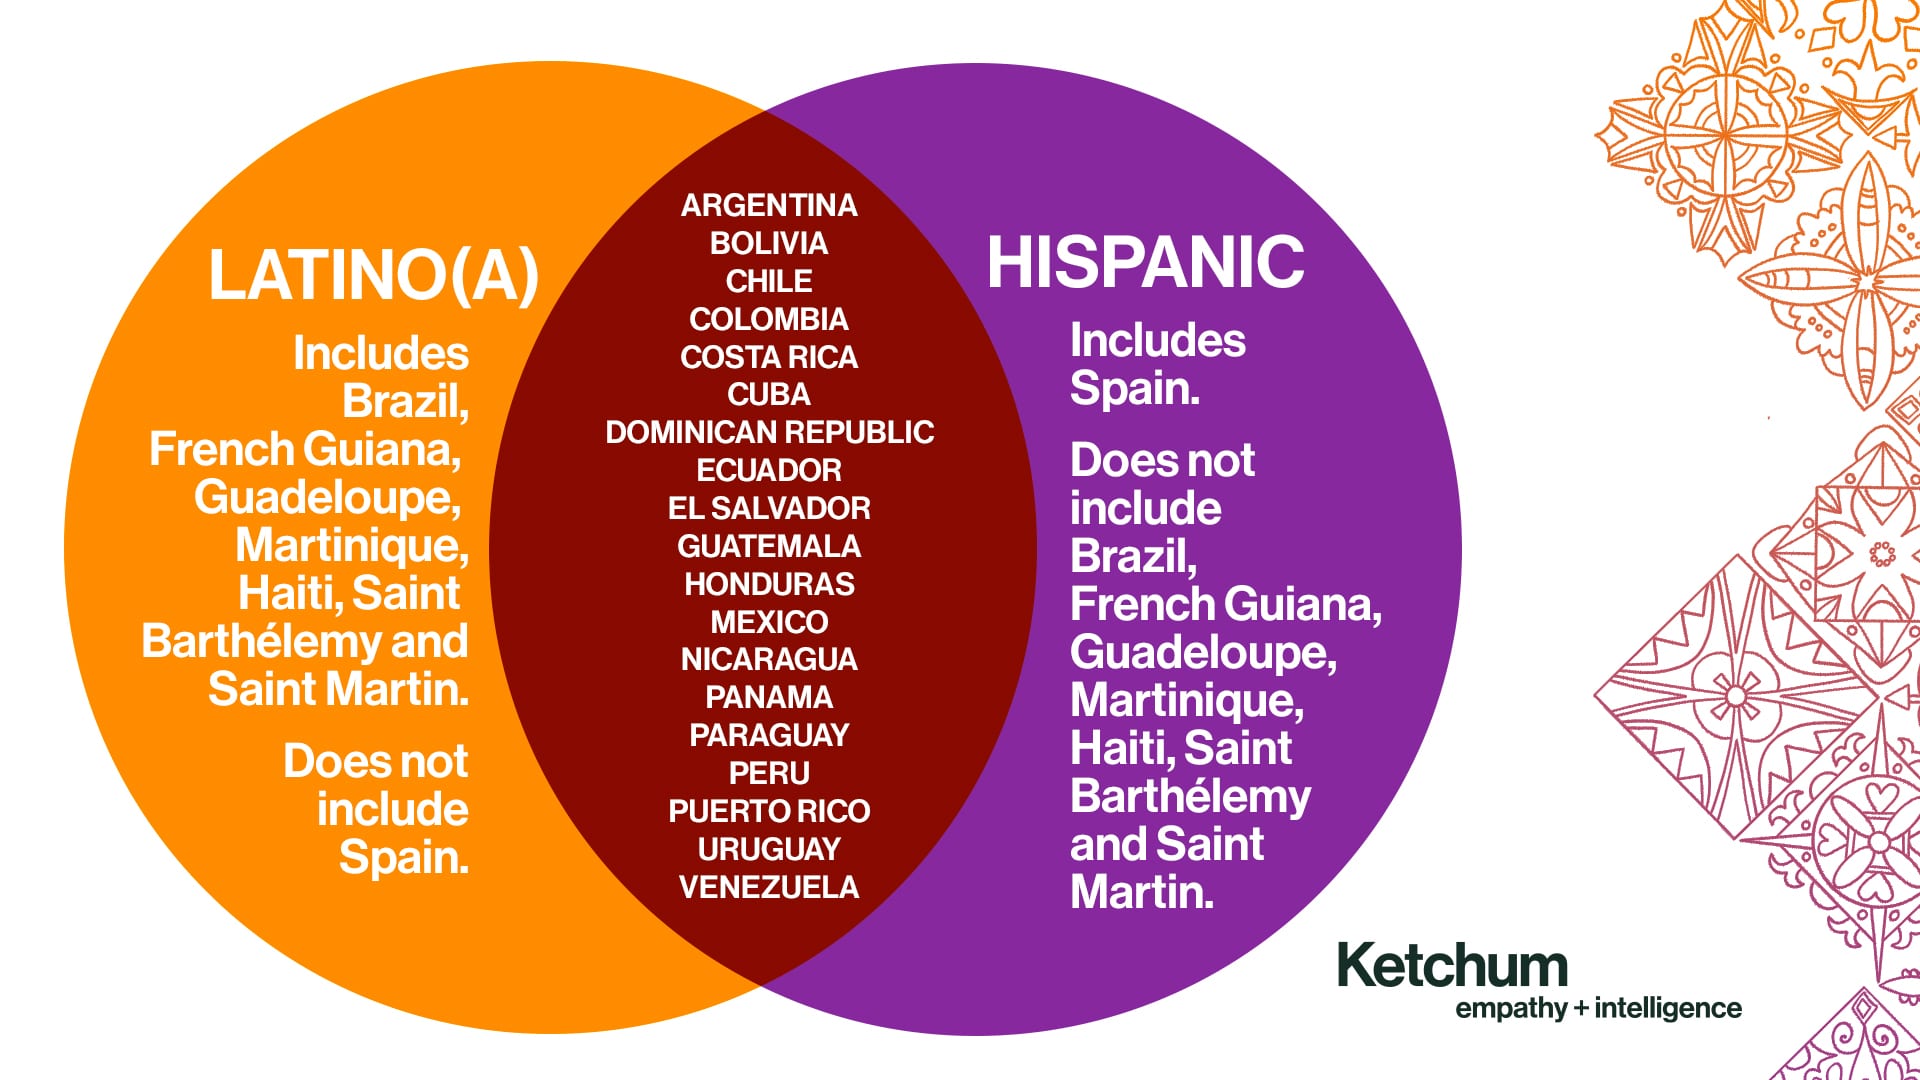 Hispanic, Latino, Latin(x), Spanish: Clarifying Terms for Hispanic